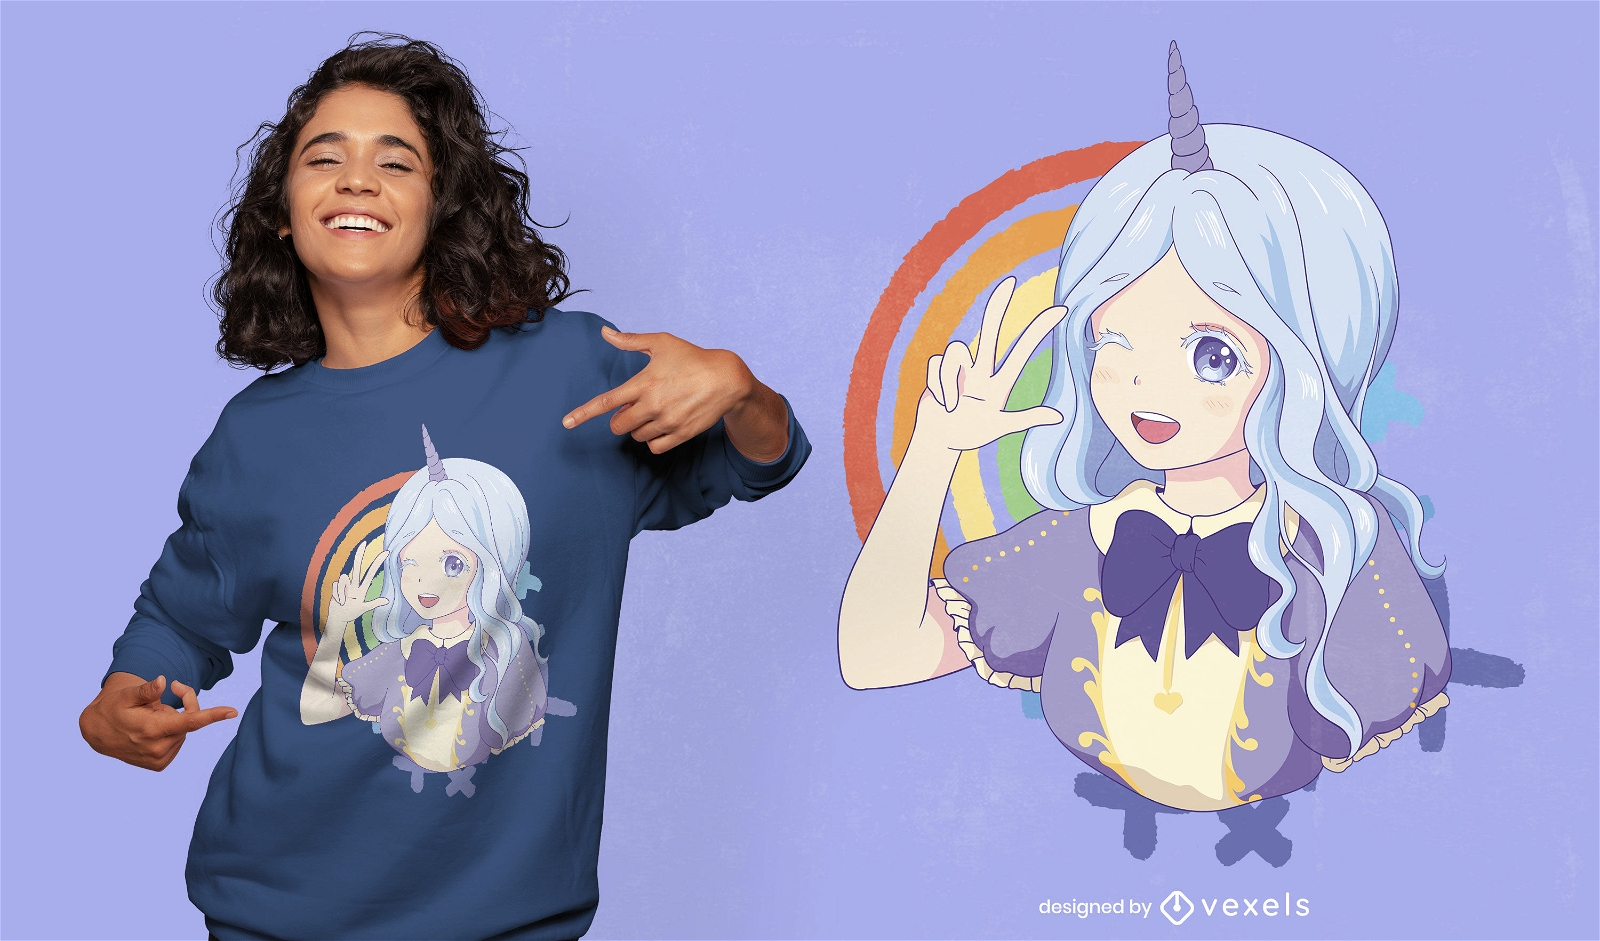 Baixar Vetor De Design Fofo De T-shirt De Anime Com Anjo